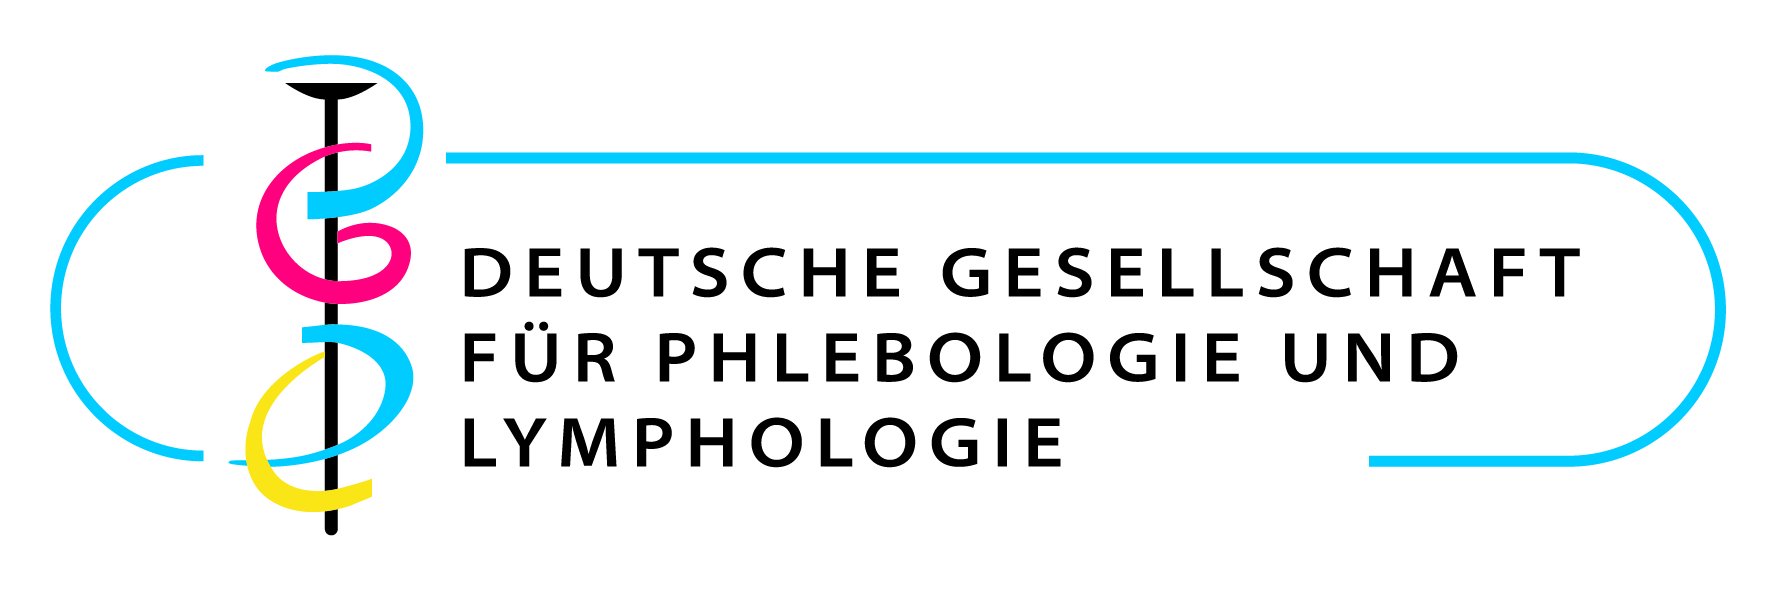 Zur Website der Deutschen Gesellschaft für Phlebologie und Lymphologie (DGPL)